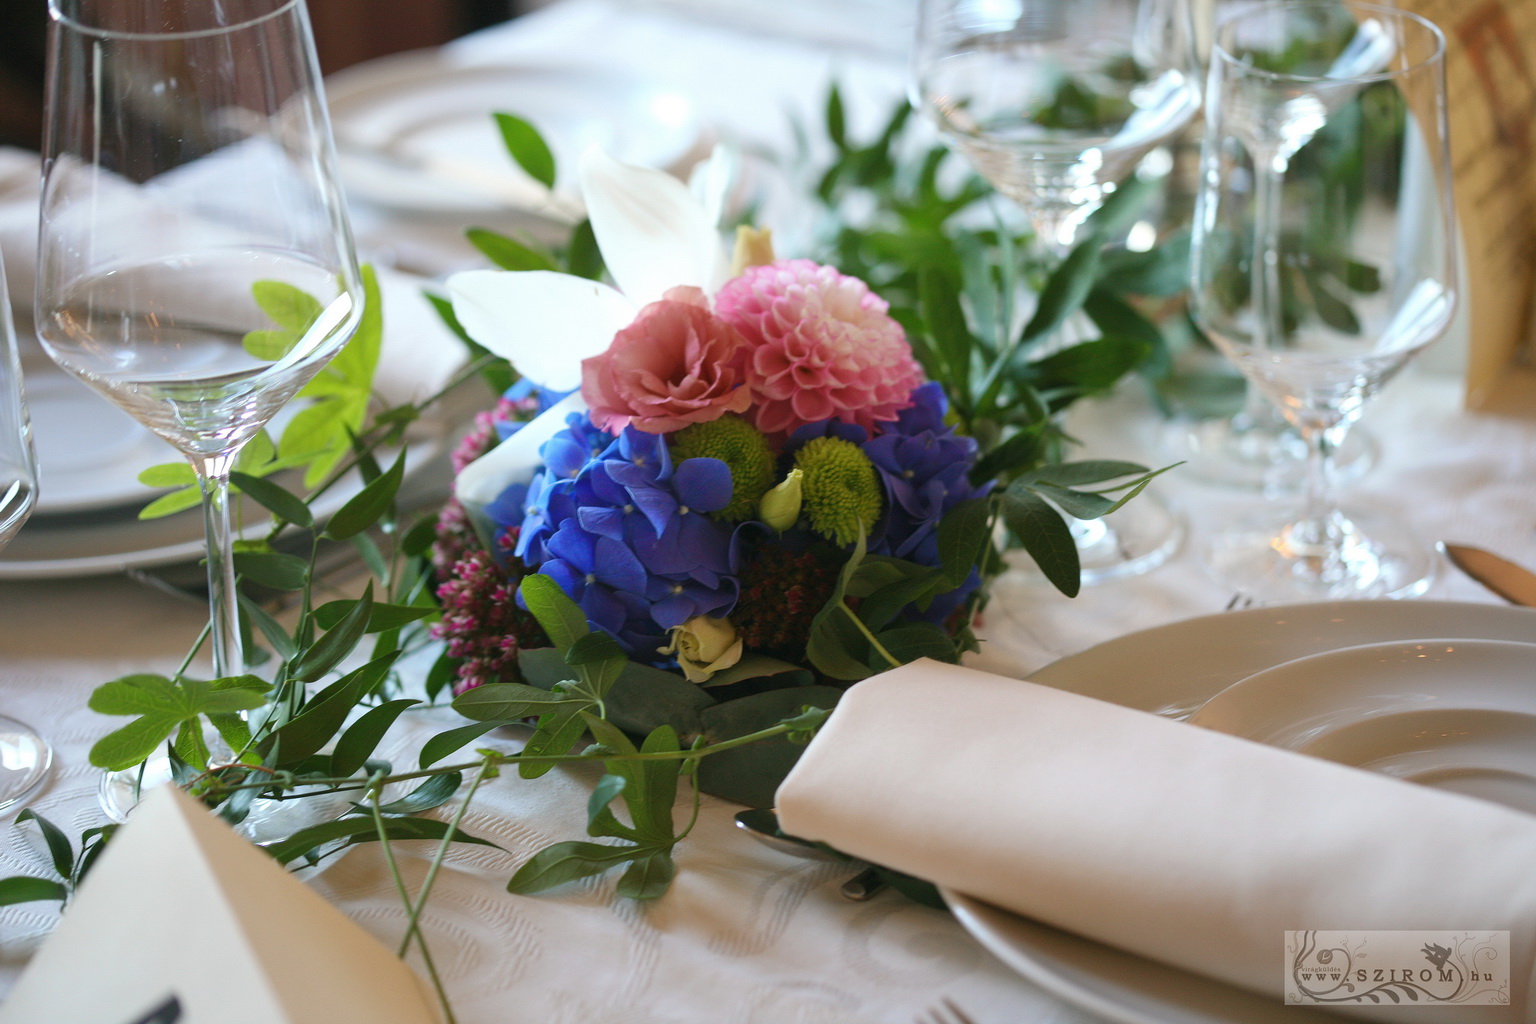 Virágküldés Budapest - Tekergő golgotás asztaldísz 1m, Halászbástya étterem Budapest (kék, lila, dália, hortenzia), esküvő